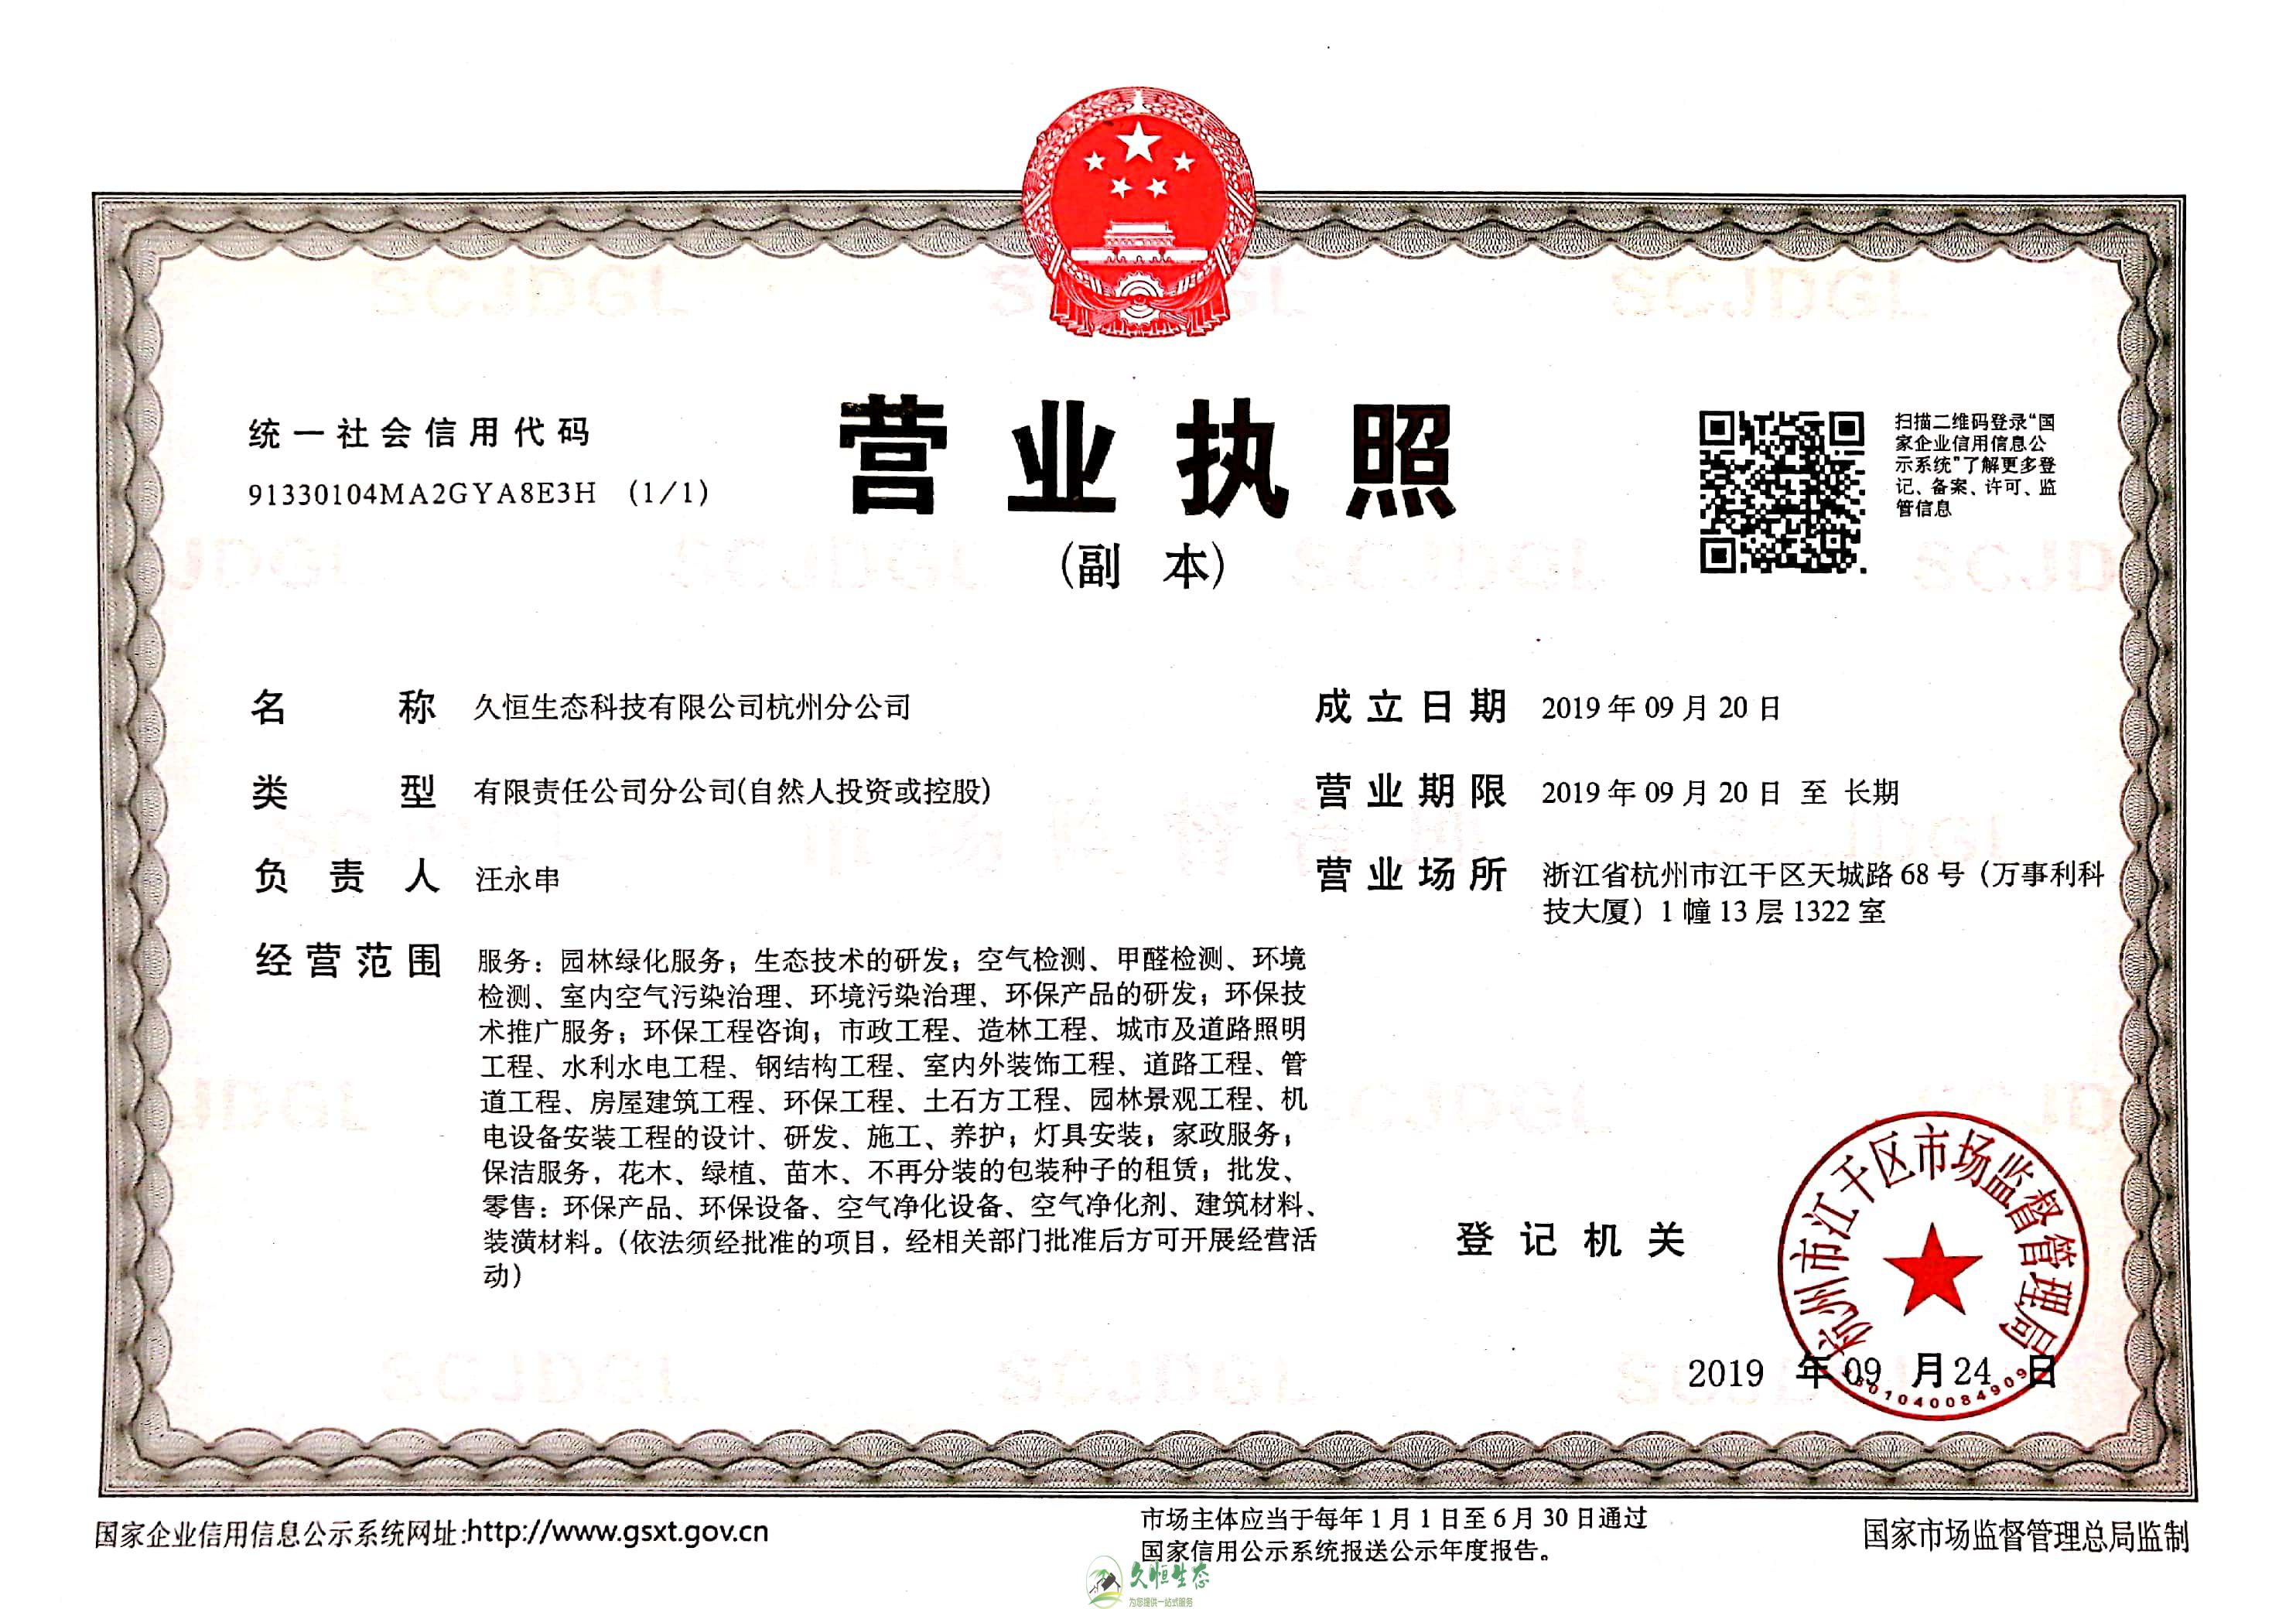 新站久恒生态杭州分公司营业执照